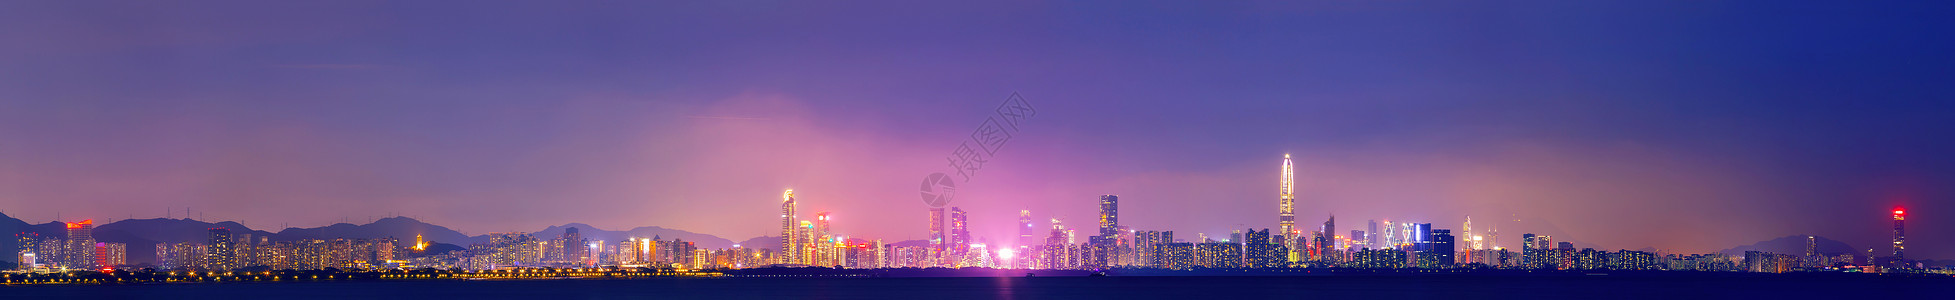 深圳夜城市地平线夜景风光背景